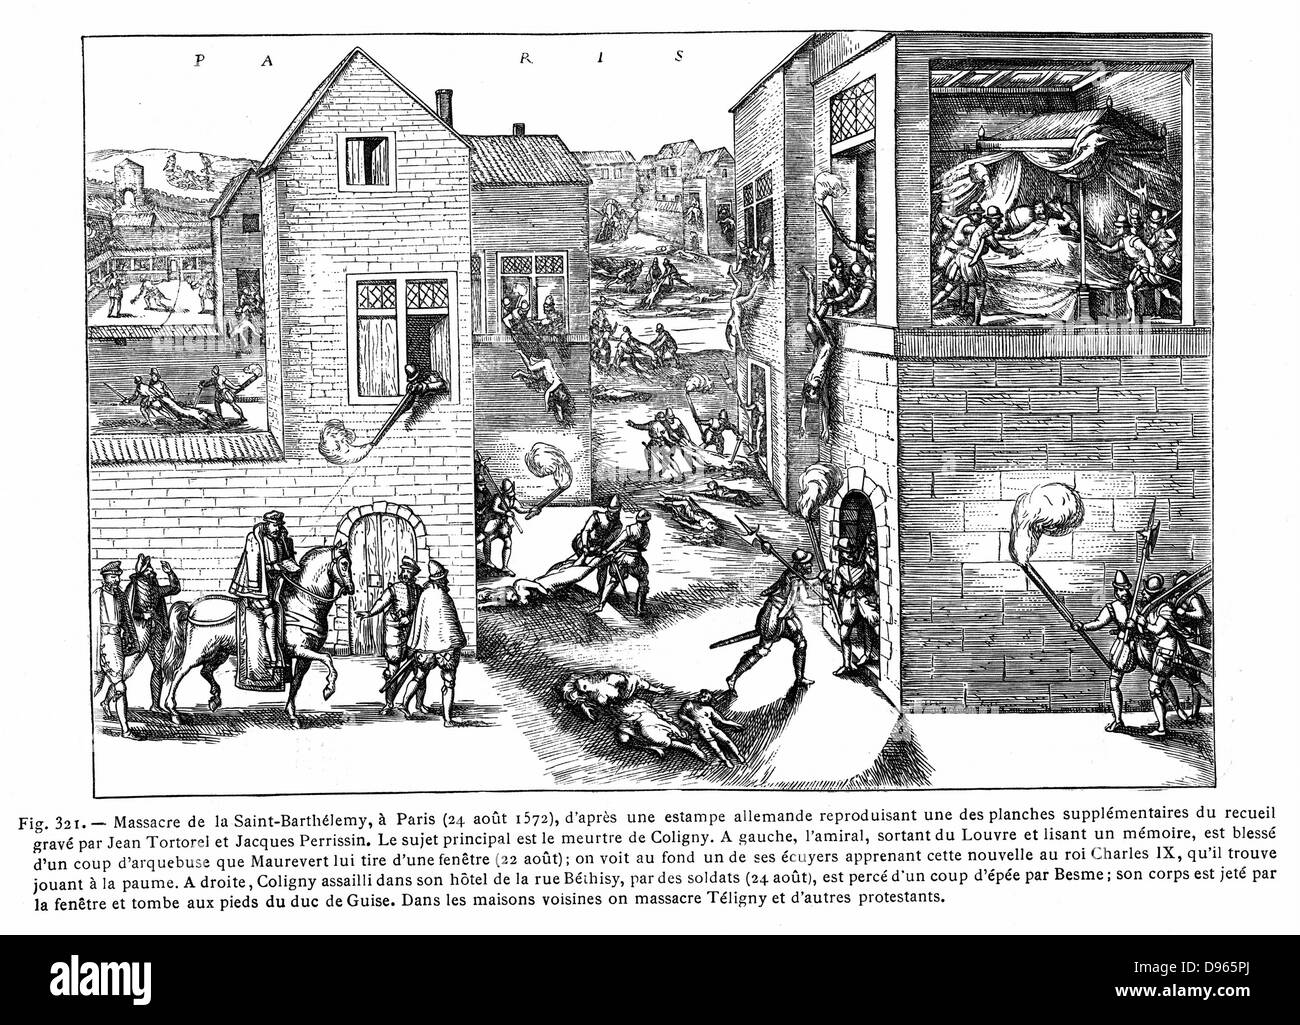 Las guerras religiosas francesas 1562-1598. Masacre de San Bartholemew, París, 24 de agosto de 1572. Líder hugonote Gaspard de Coligny; (1519-1572) herida por disparo de arma de fuego desde la ventana, el 22 de agosto, a la izquierda. A la derecha, asesinado en la cama, cuerpo arrojados desde la ventana. Carlos IX (1550-1574), rey de Francia desde 1559, jugando a tenis arriba izquierda, instigó la masacre. Grabado. Foto de stock